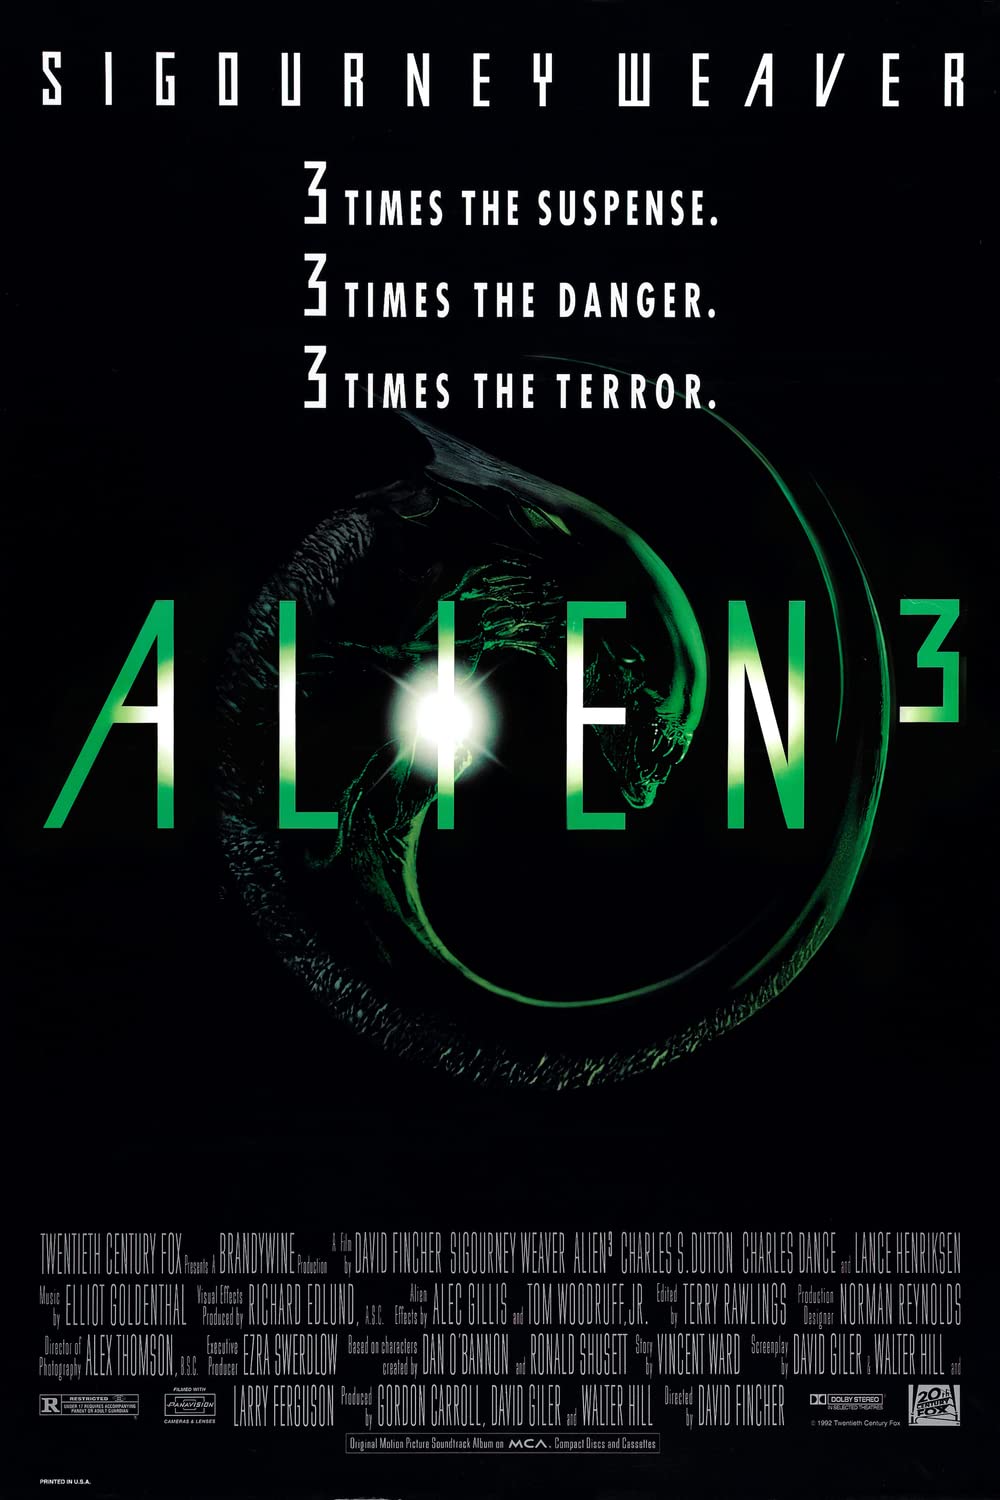 Filmbeschreibung zu Alien³